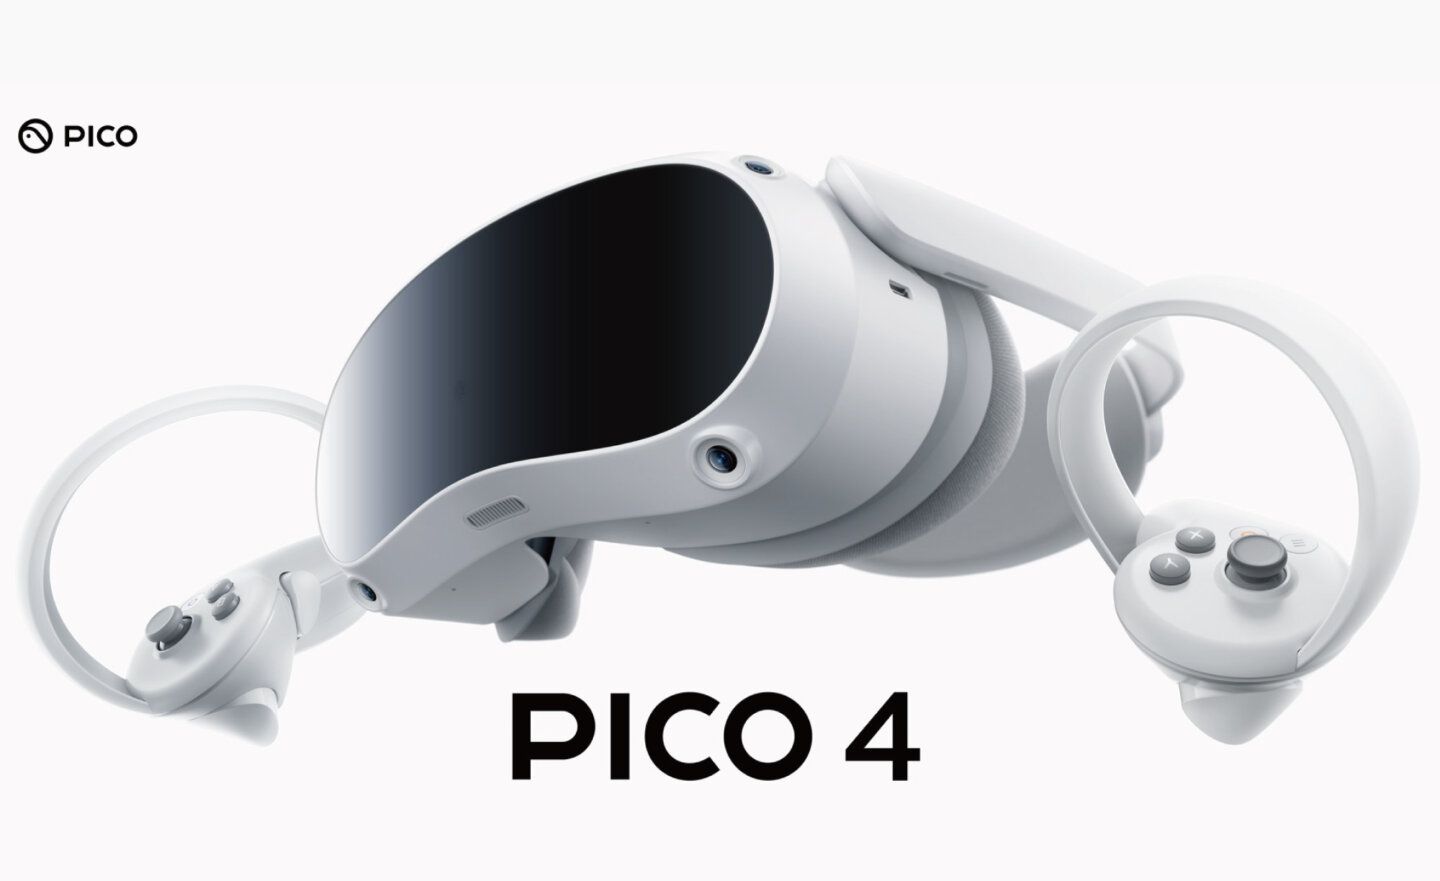 Pico 放棄與 Meta Quest 競爭，調整戰略將目標轉向蘋果 Apple Vision Pro